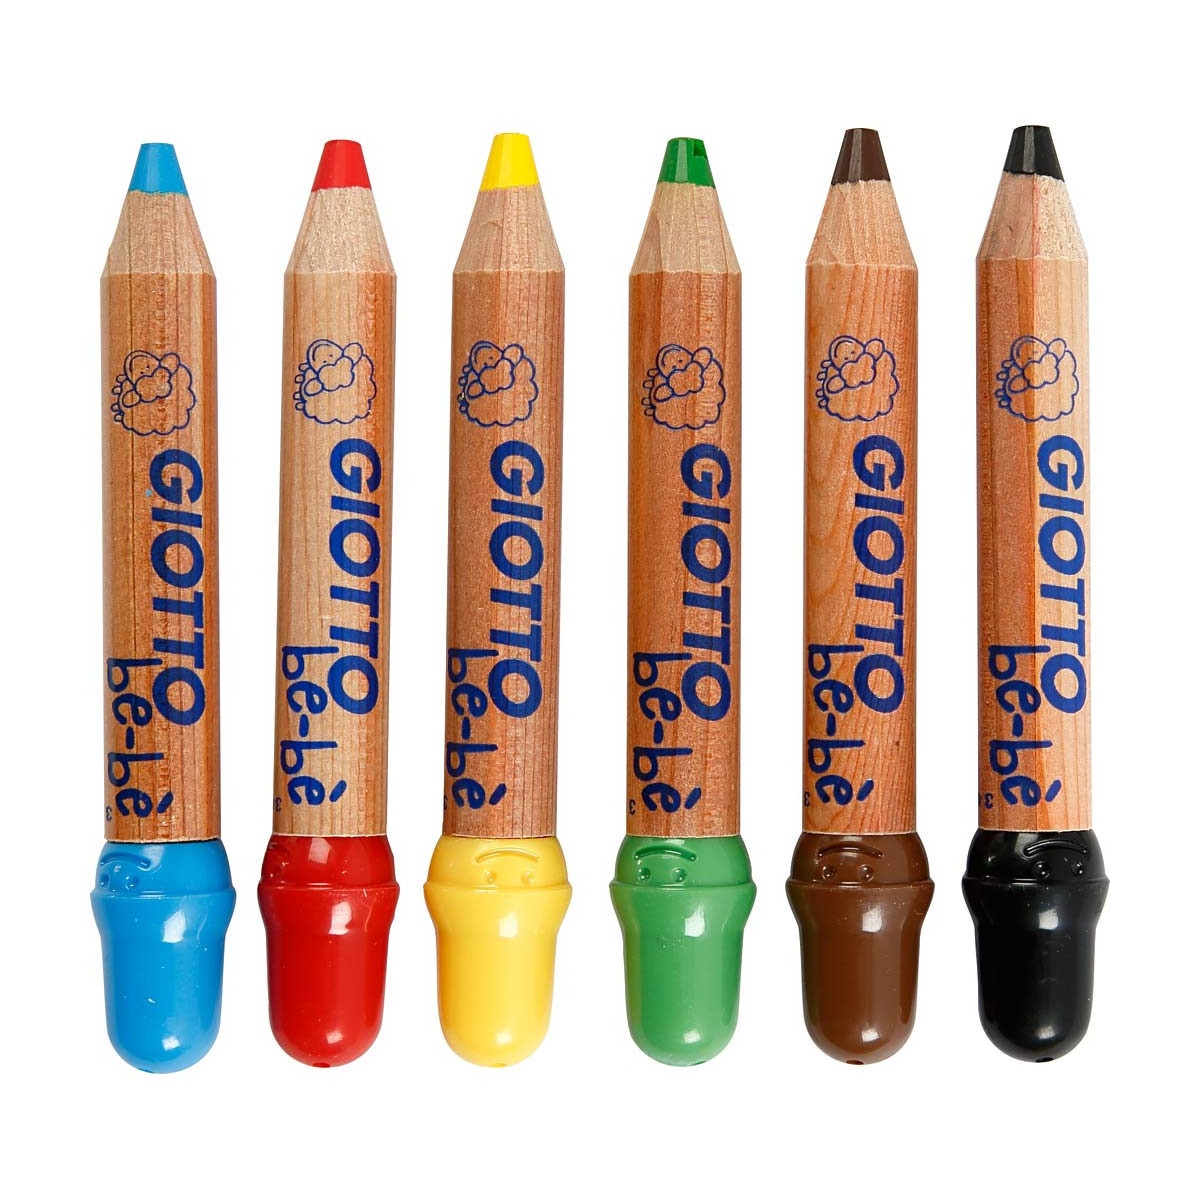 Crayons de couleur Giotto - A partir de 2 ans - Crayons de couleur